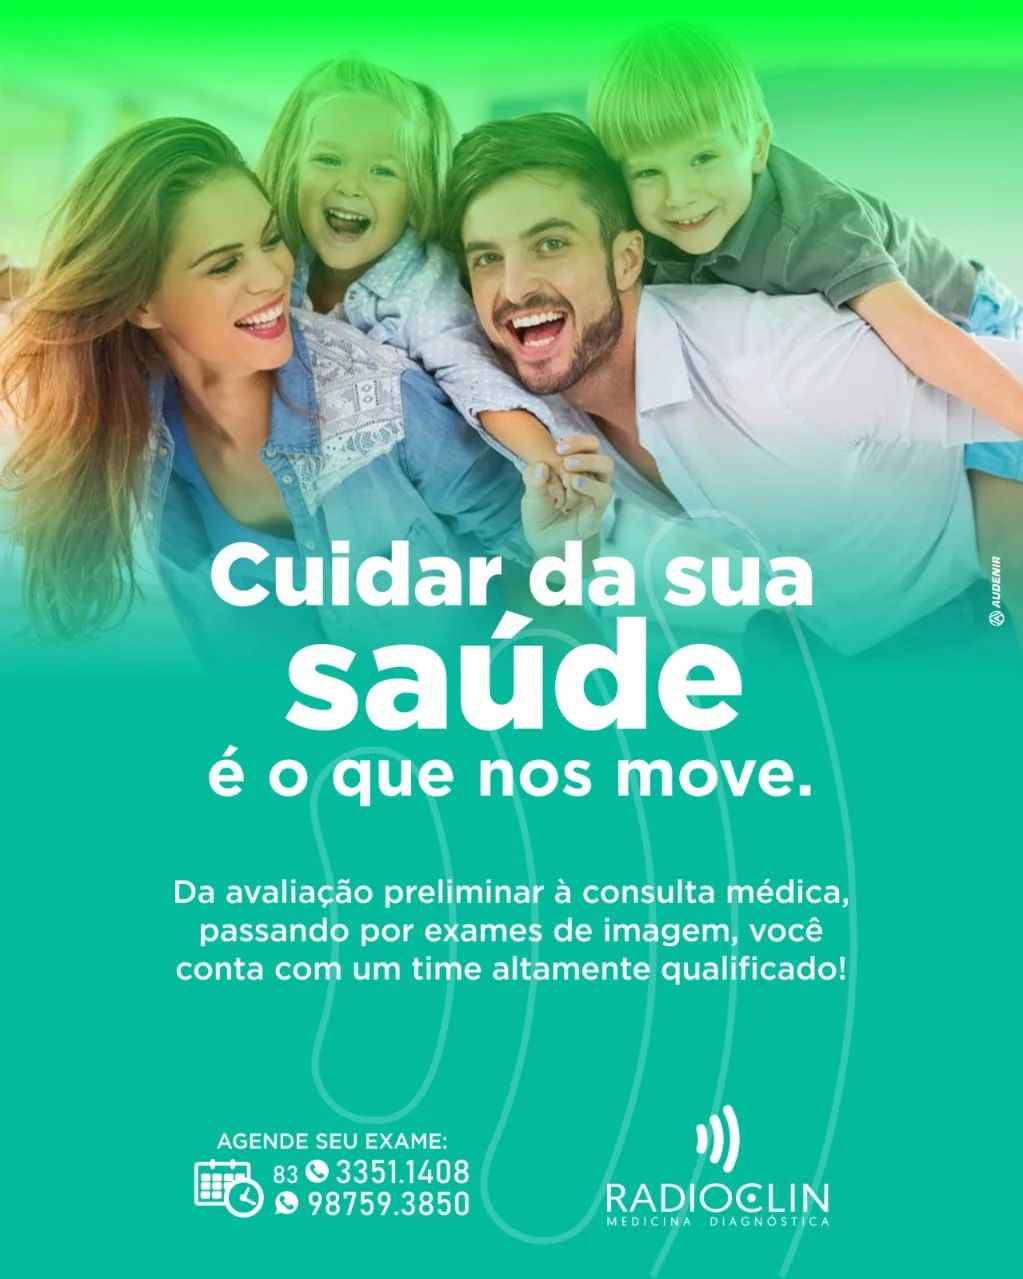 407668701_1405270047061255_39059995160824360_n.webp-1 Avanços Tecnológicos na RADIOCLIN de Monteiro Elevam o Padrão de Diagnósticos Médicos